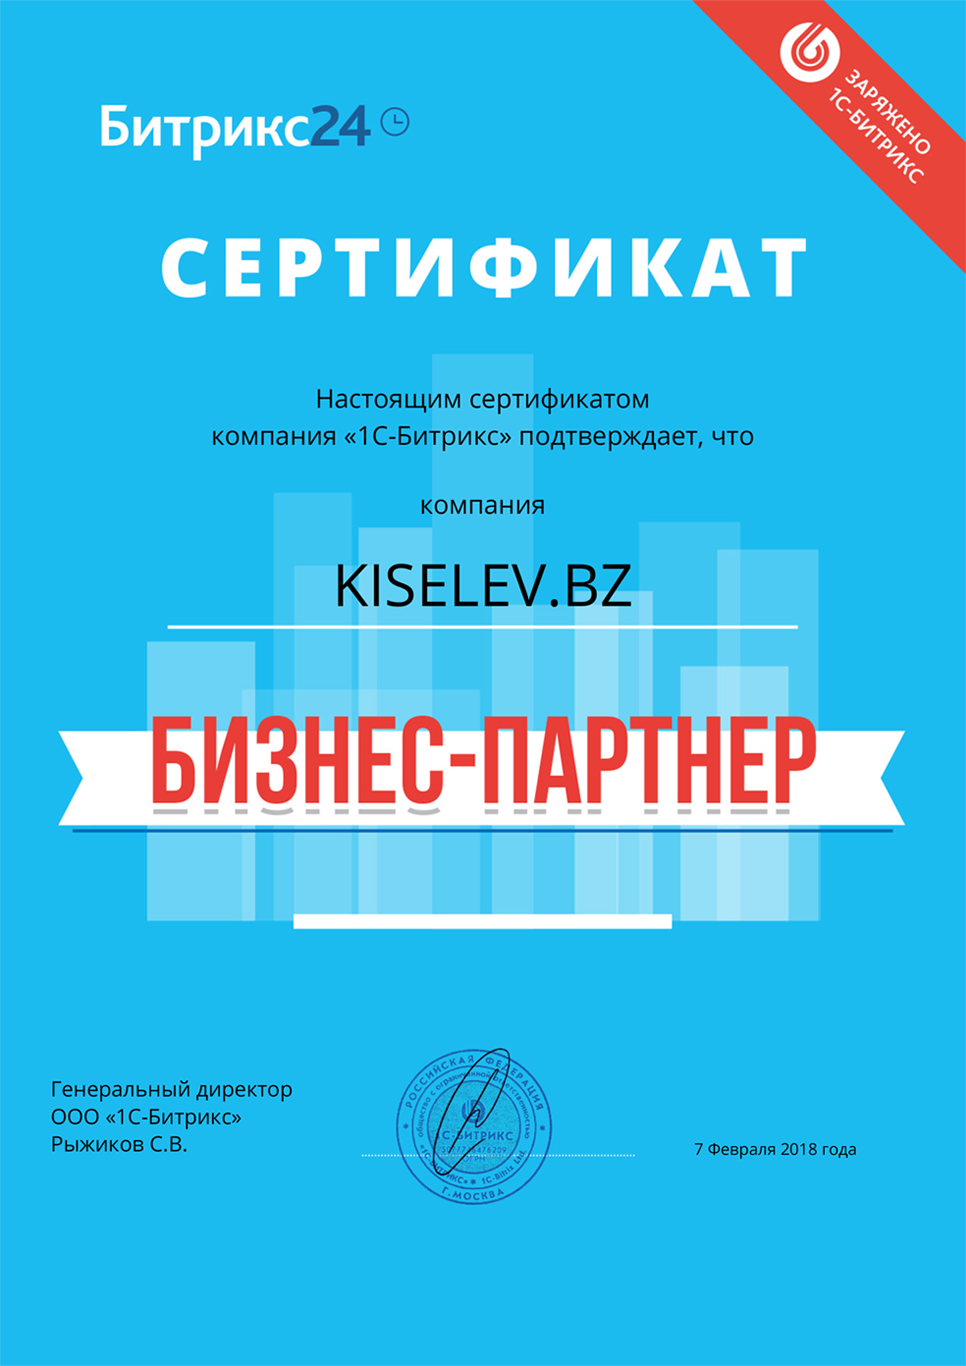 Сертификат партнёра по АМОСРМ в Сосновке